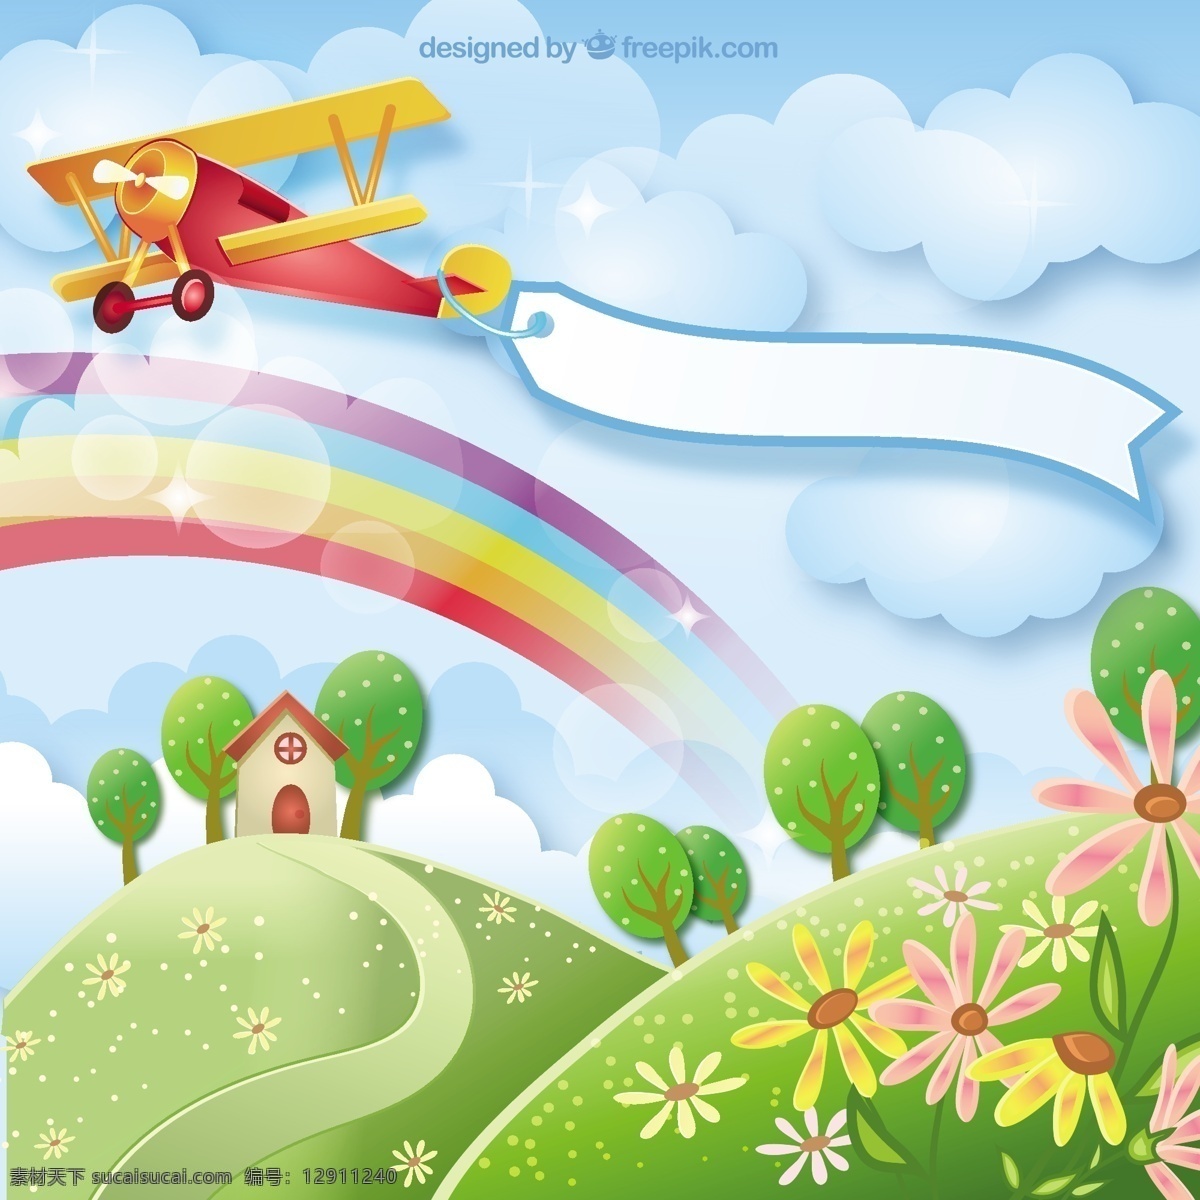 卡通 美丽 彩虹 蓝天 白云 飞机 矢量 房子 矢量素材 树木 设计素材